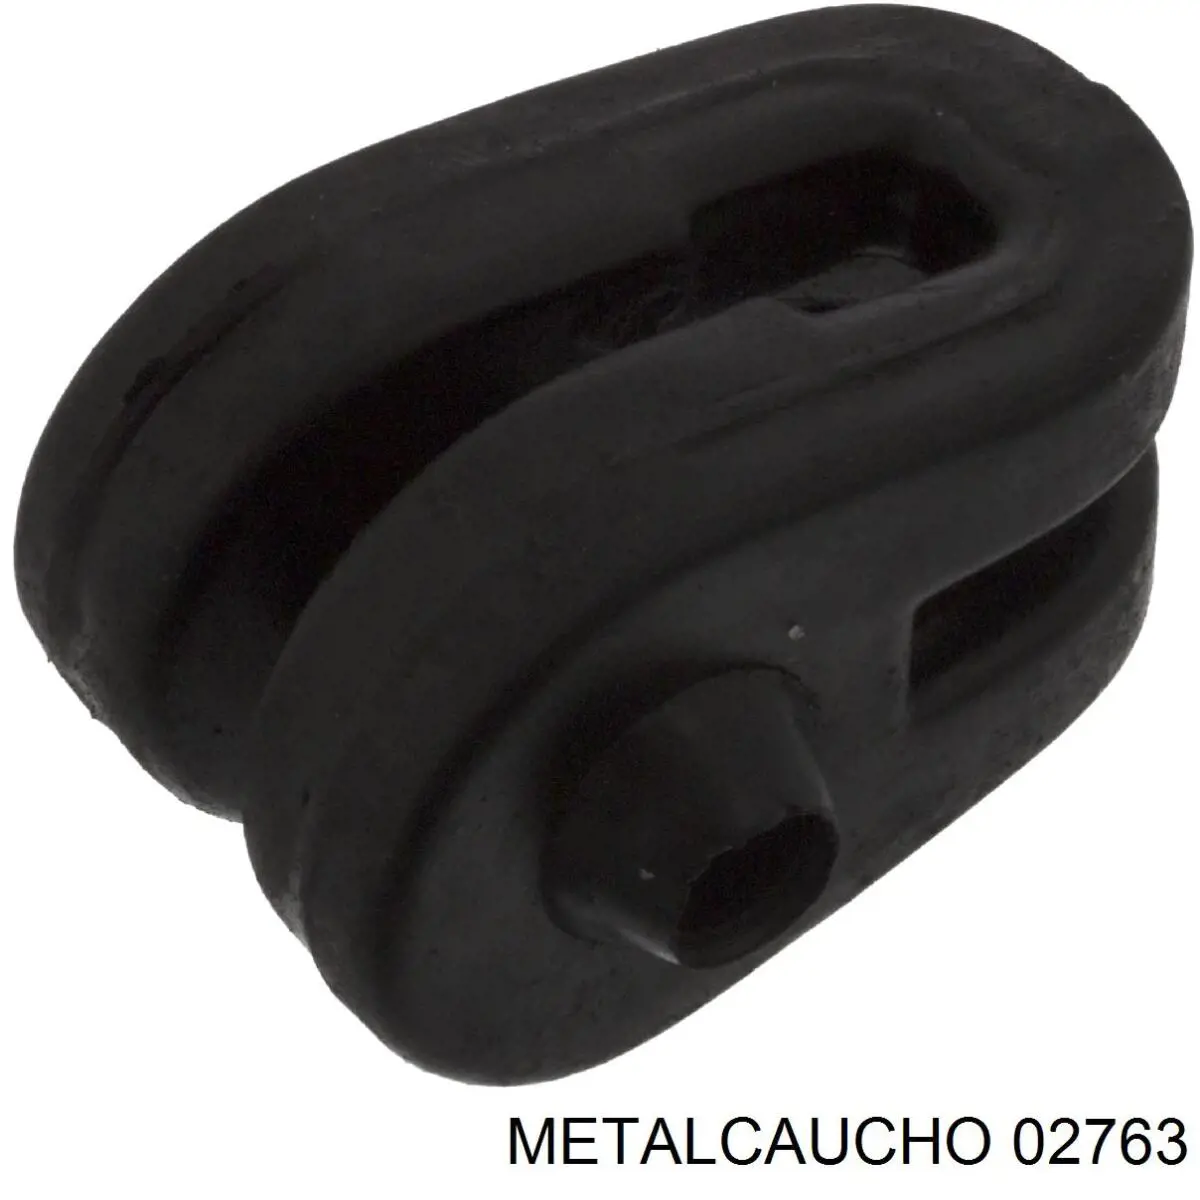 02763 Metalcaucho soporte escape